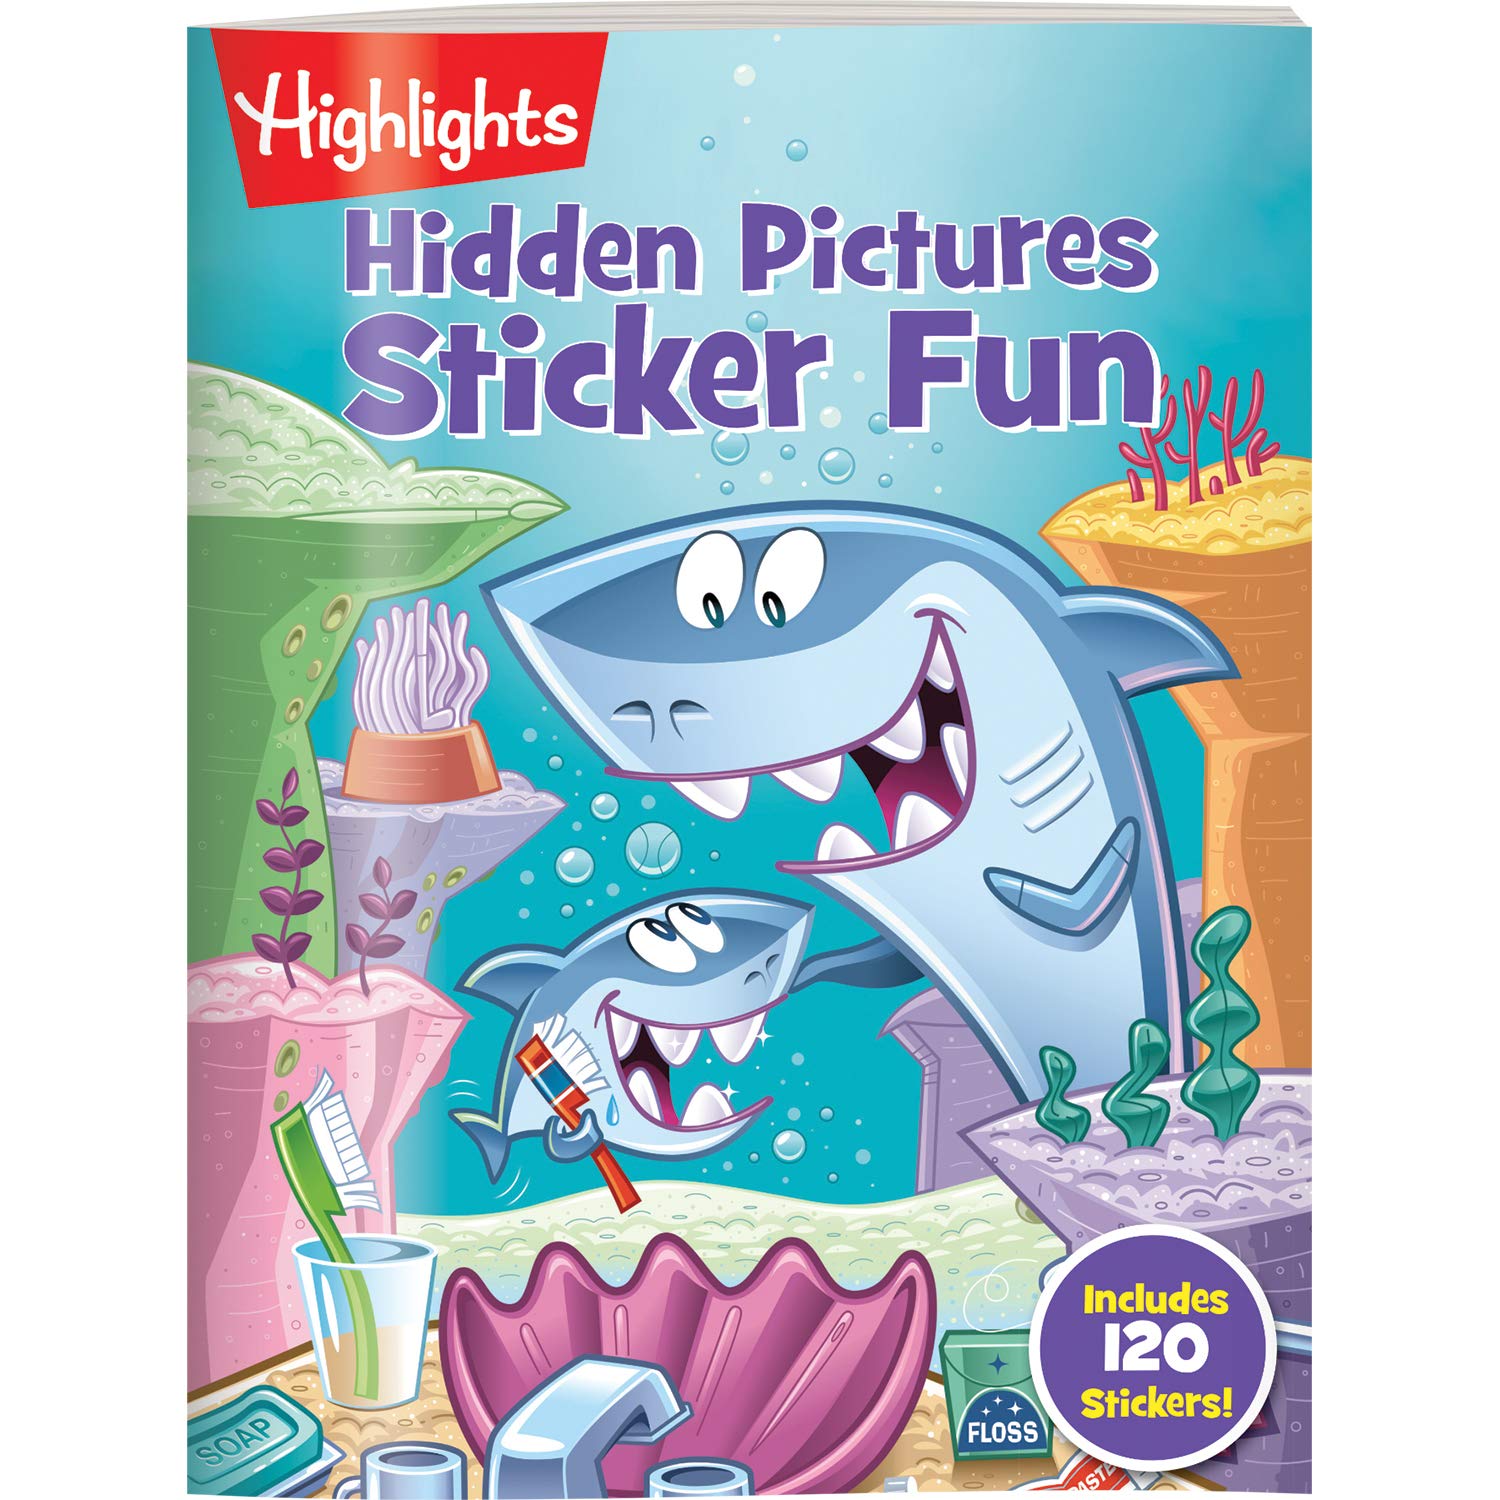 Highlights Hidden Pictures Sticker Fun 4-Book Set